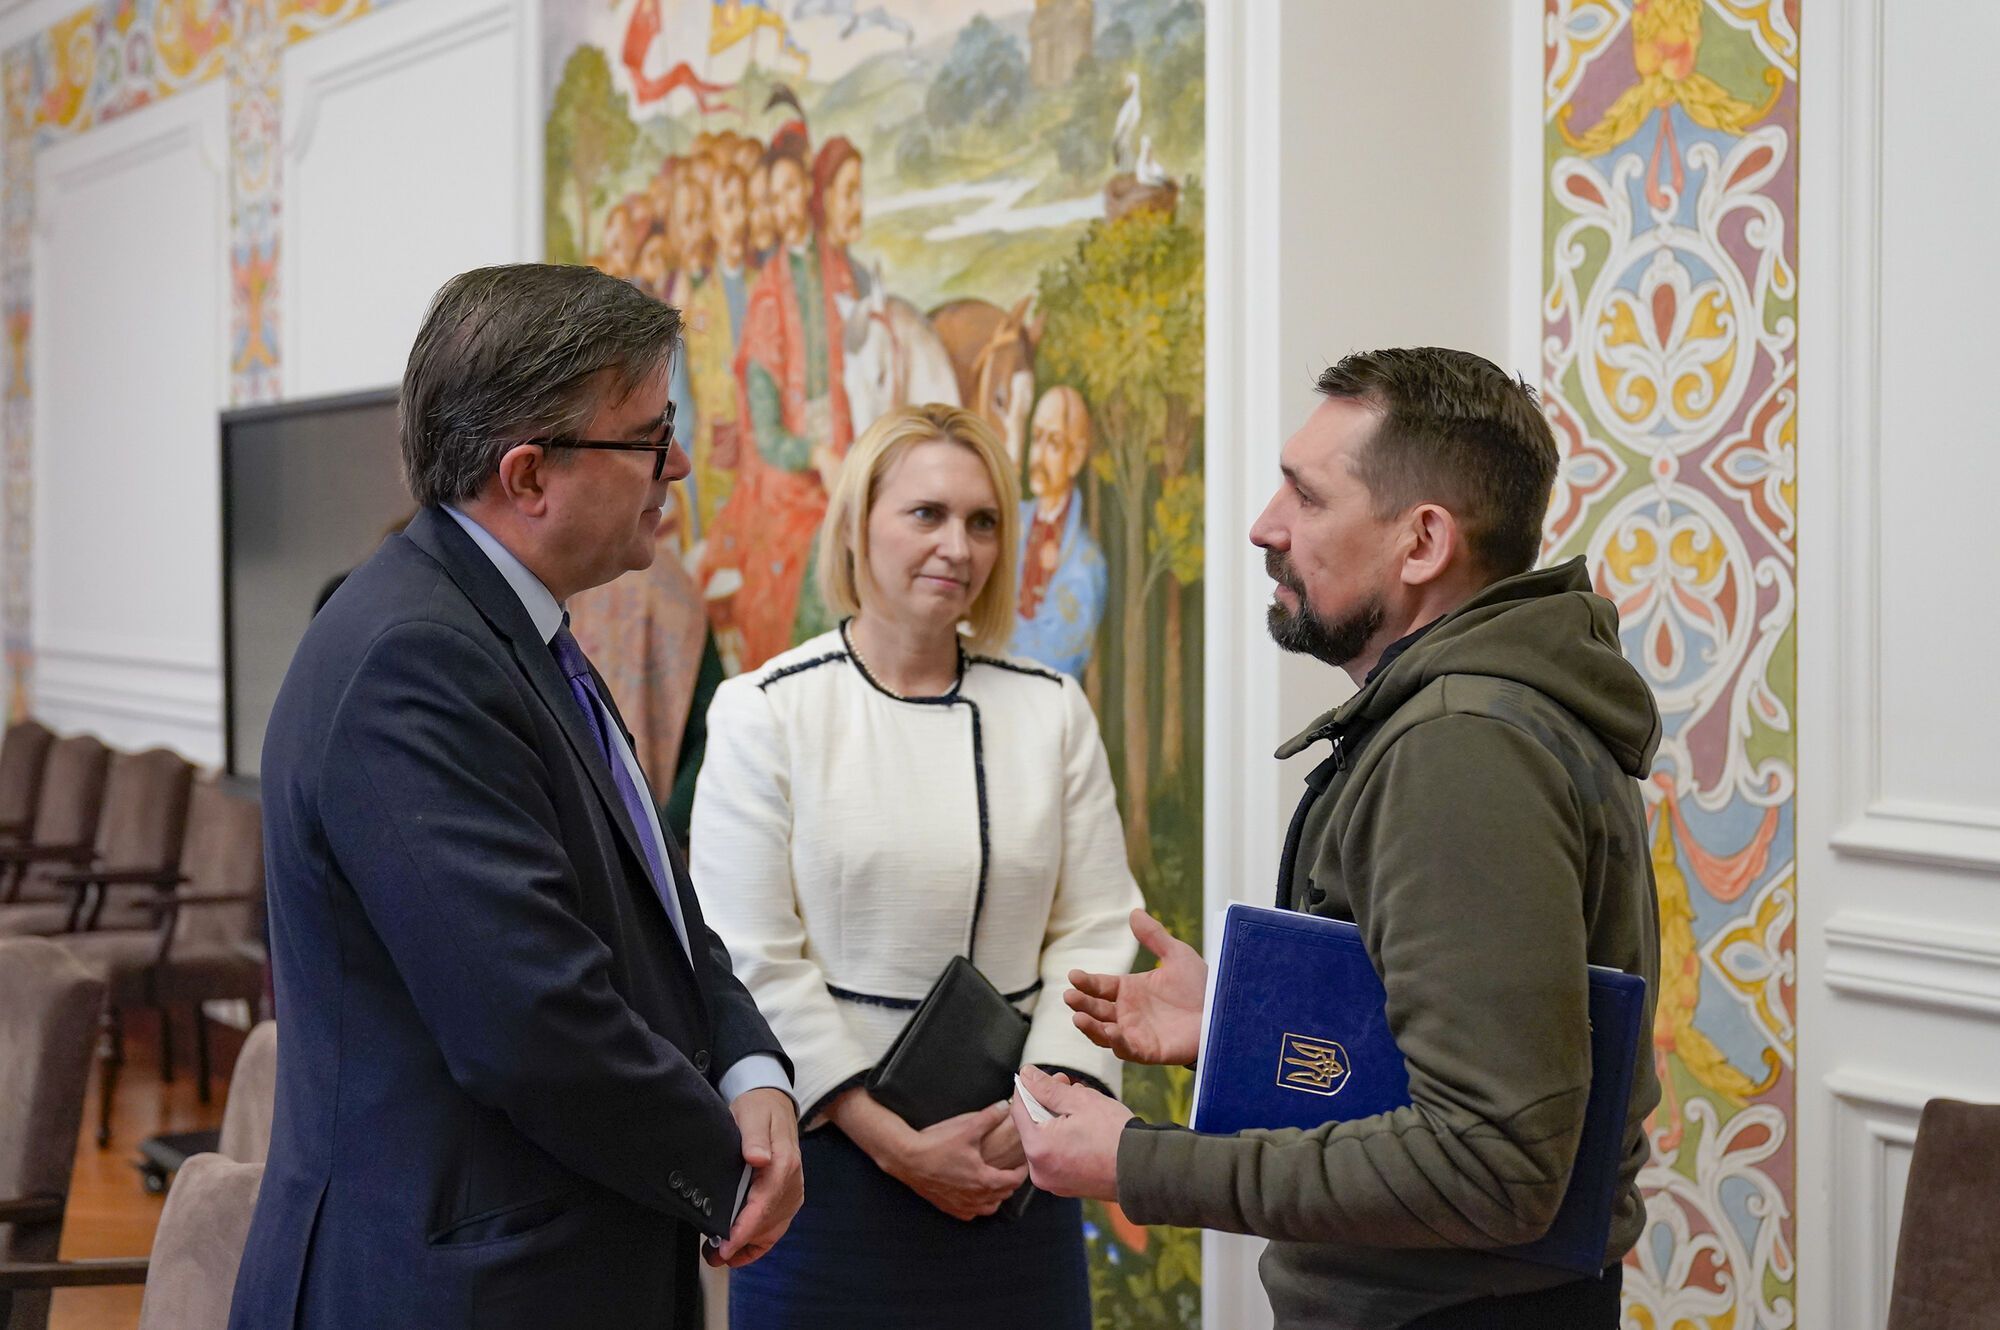 В Україну прибув із візитом координатор Держдепу з питань санкцій 